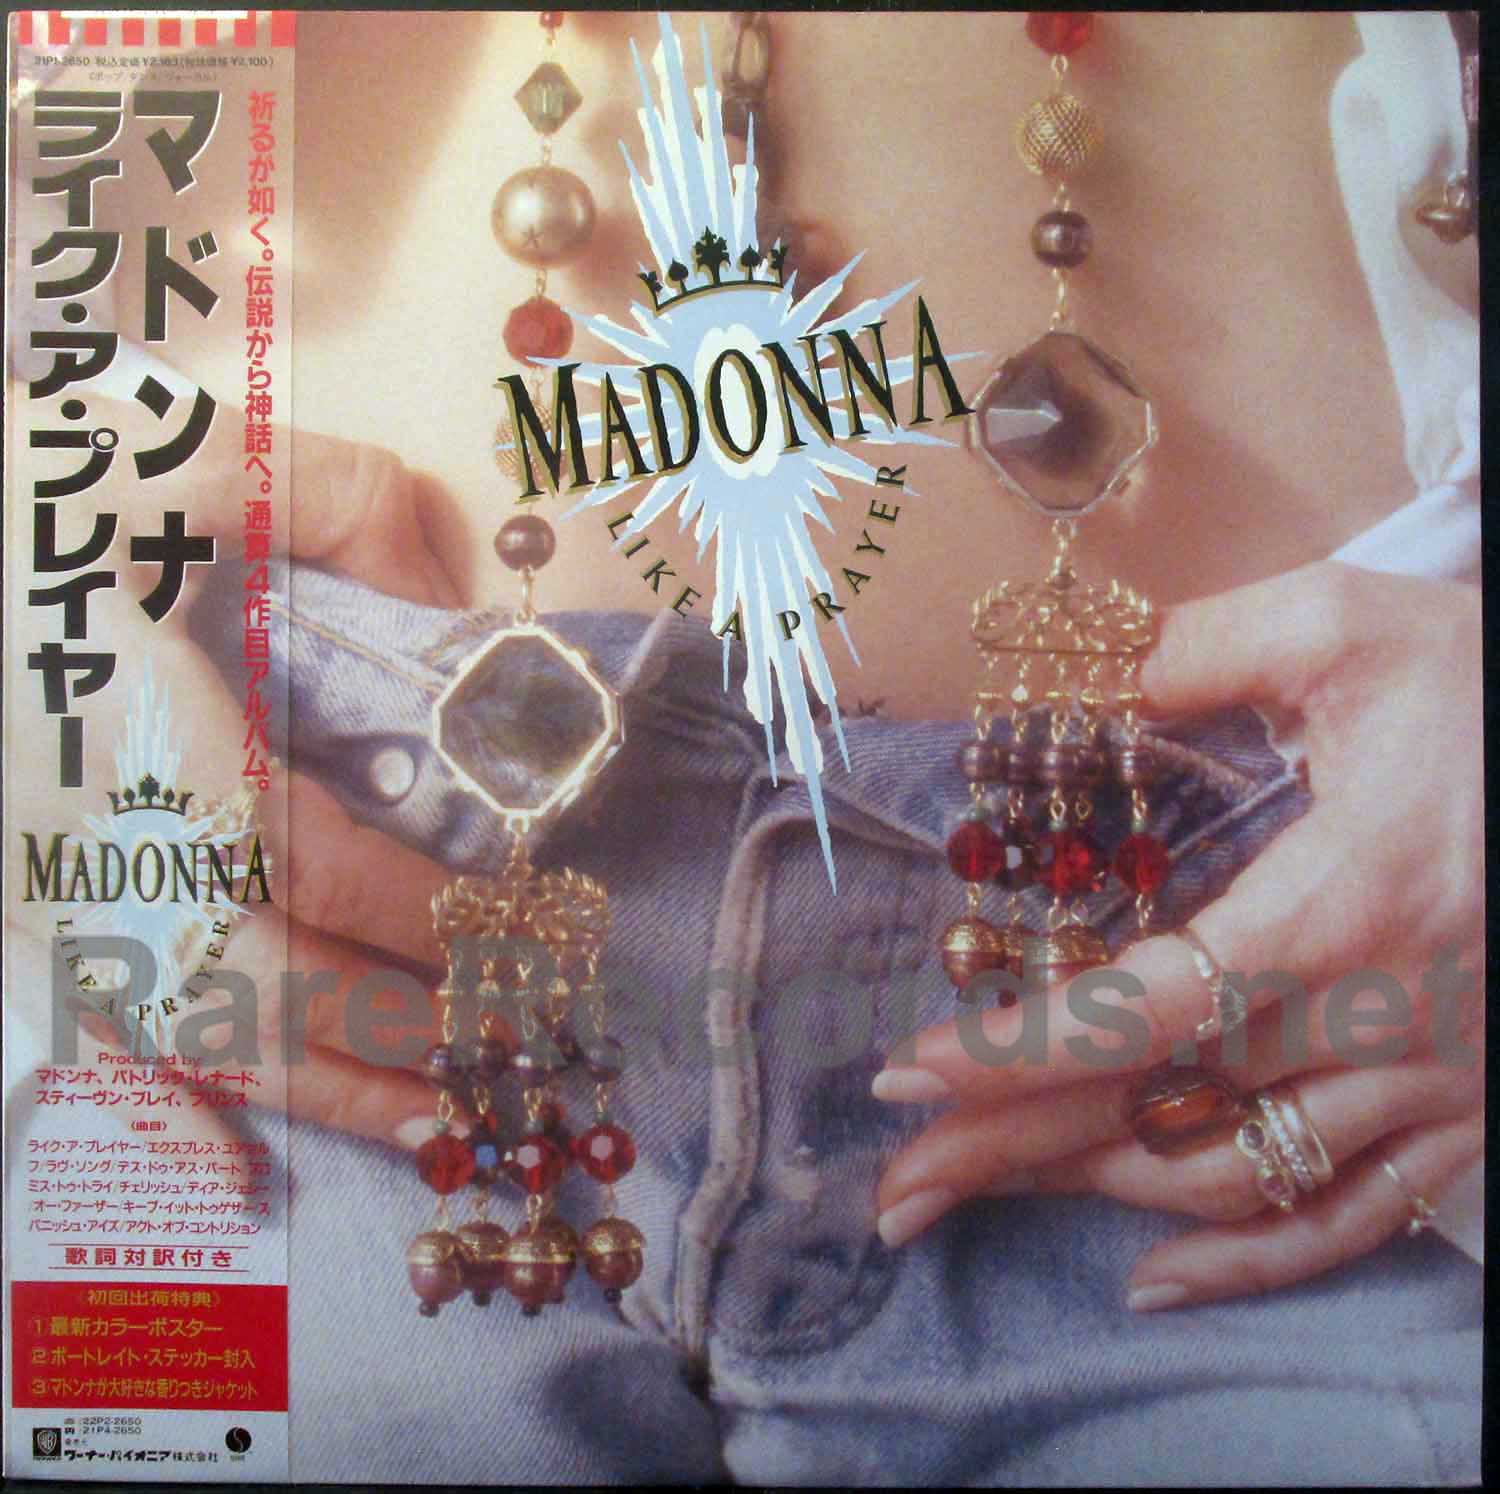 vitamin fremstille Et kors Madonna – Like a Prayer 1989 Japan LP with obi